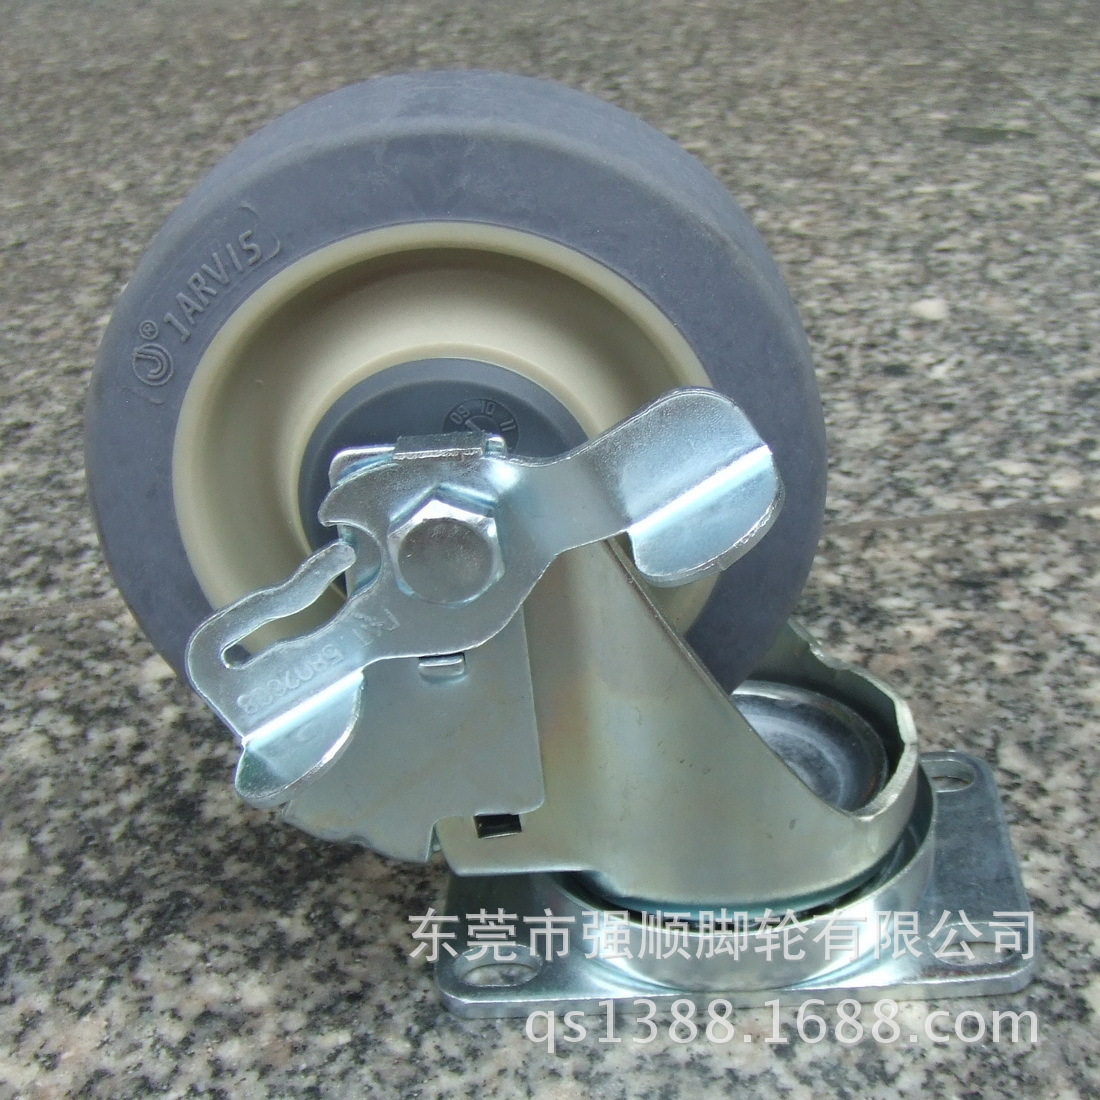 佳威工业脚轮20系列-5寸手推车专用消音人造胶轮万向轮示例图7